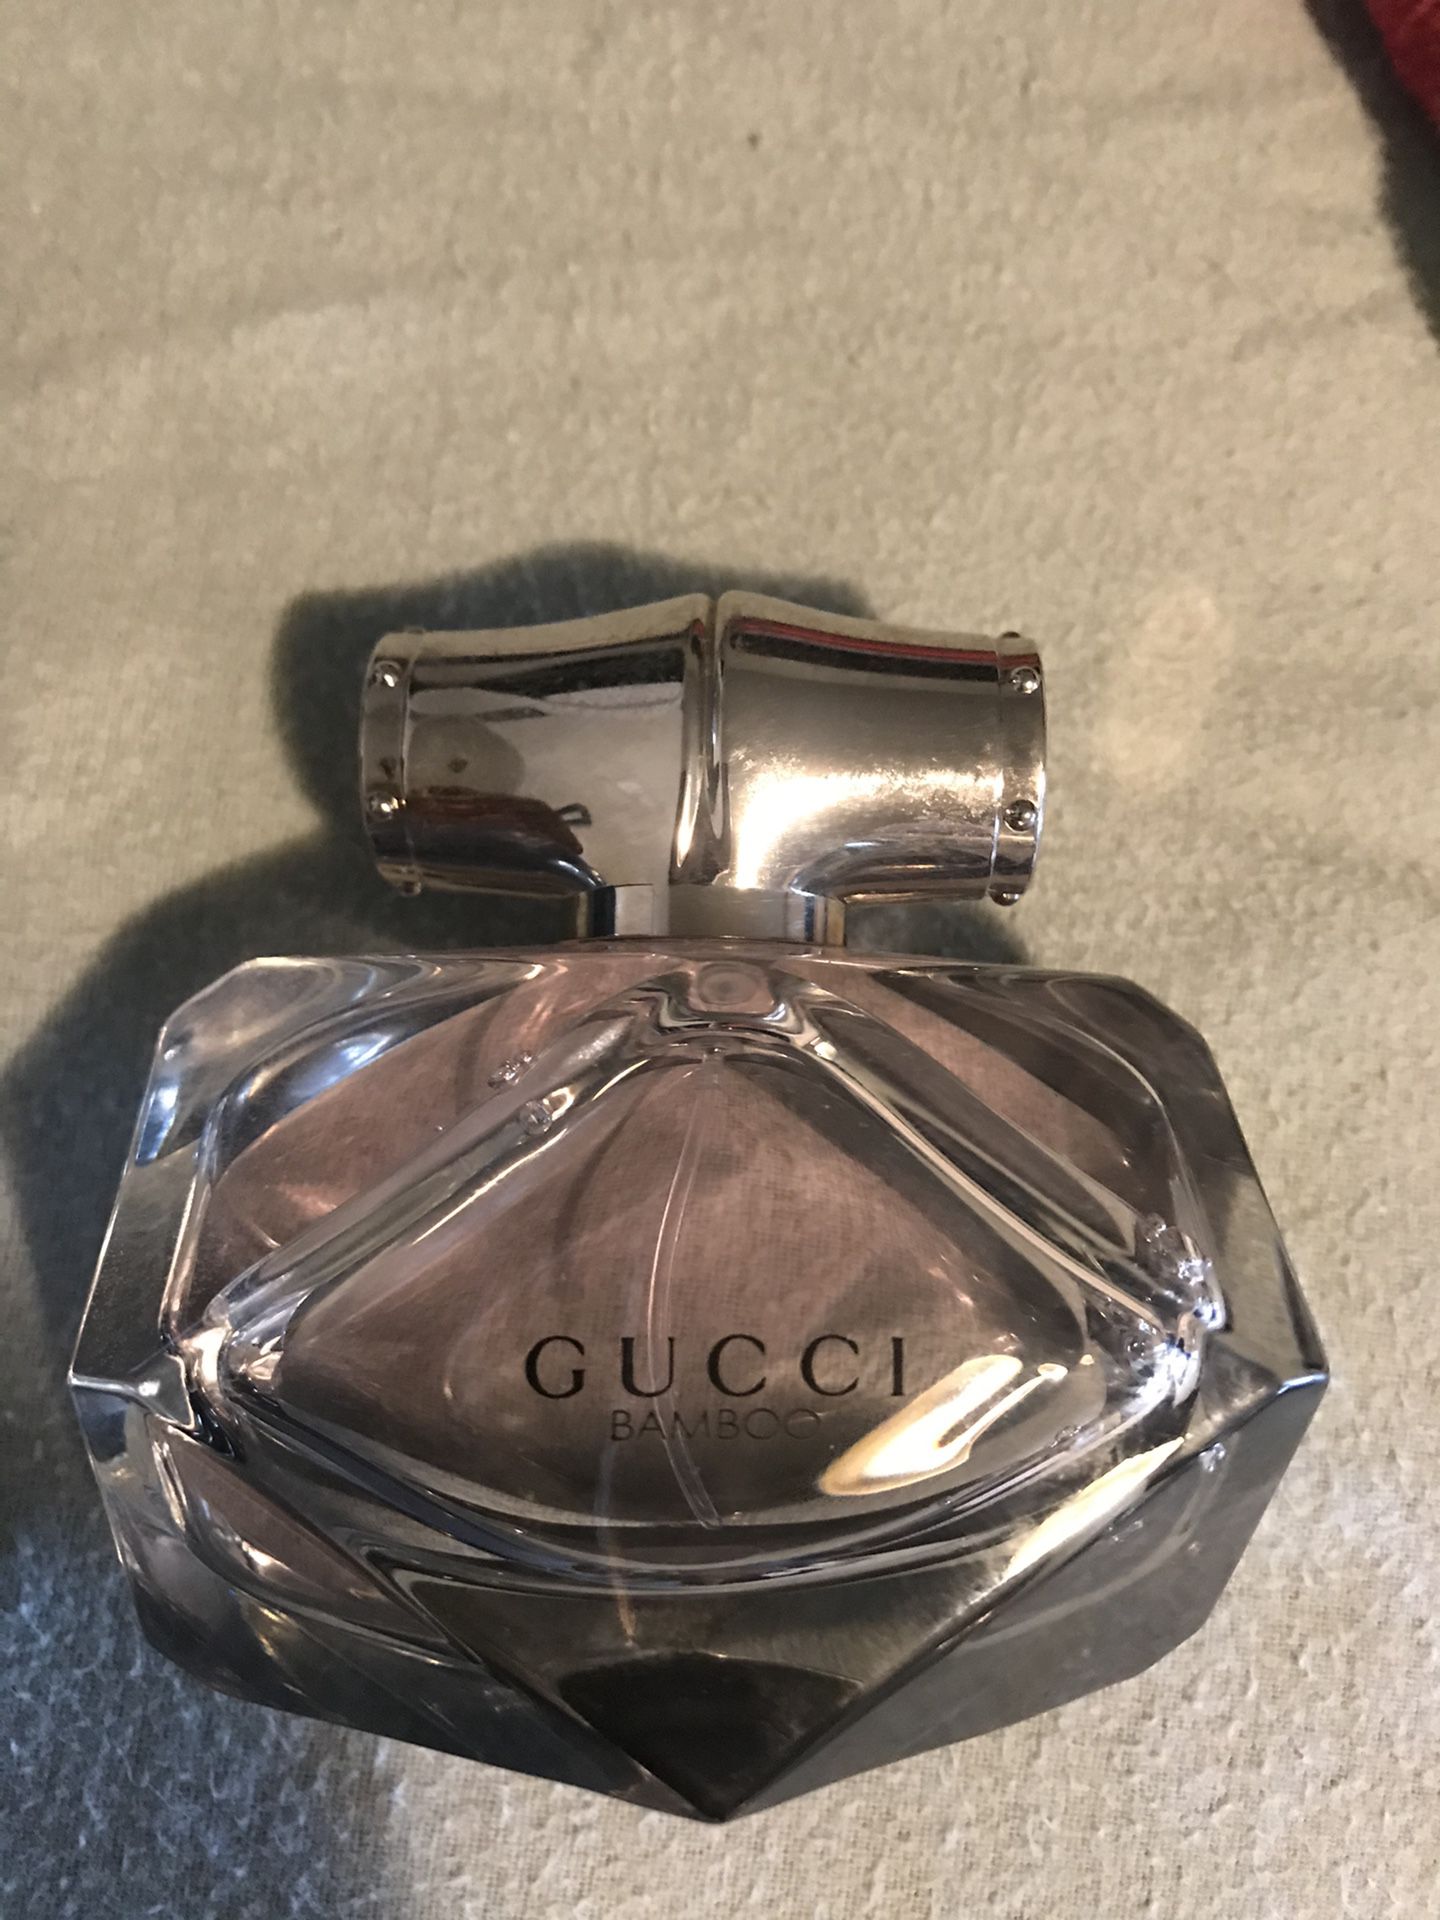 Gucci Bamboo perfume